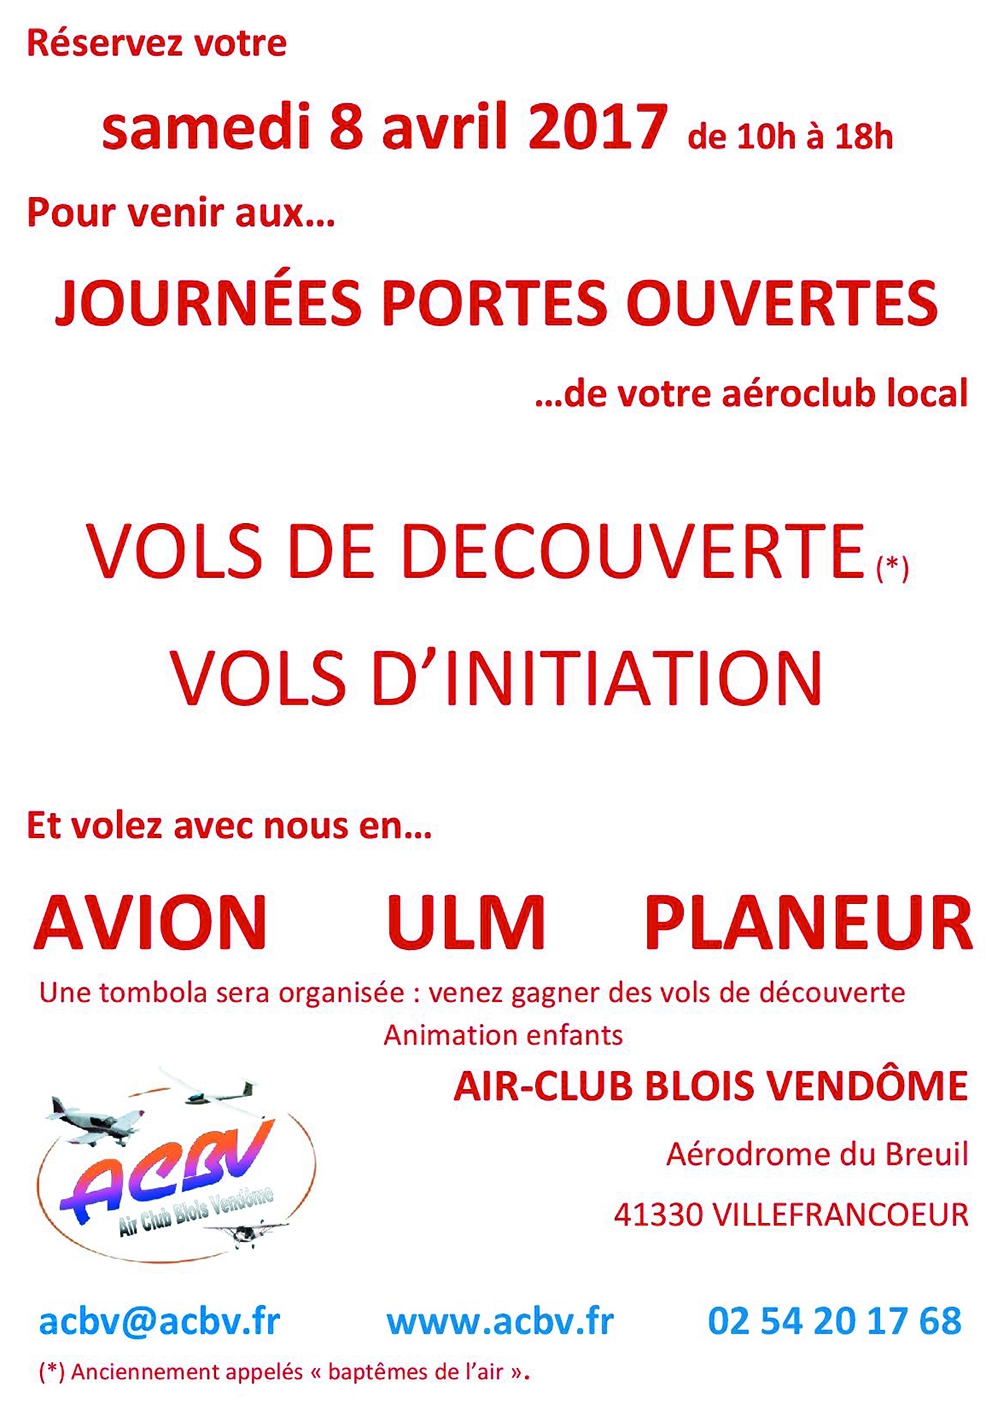 Air Club Blois-Vendôme